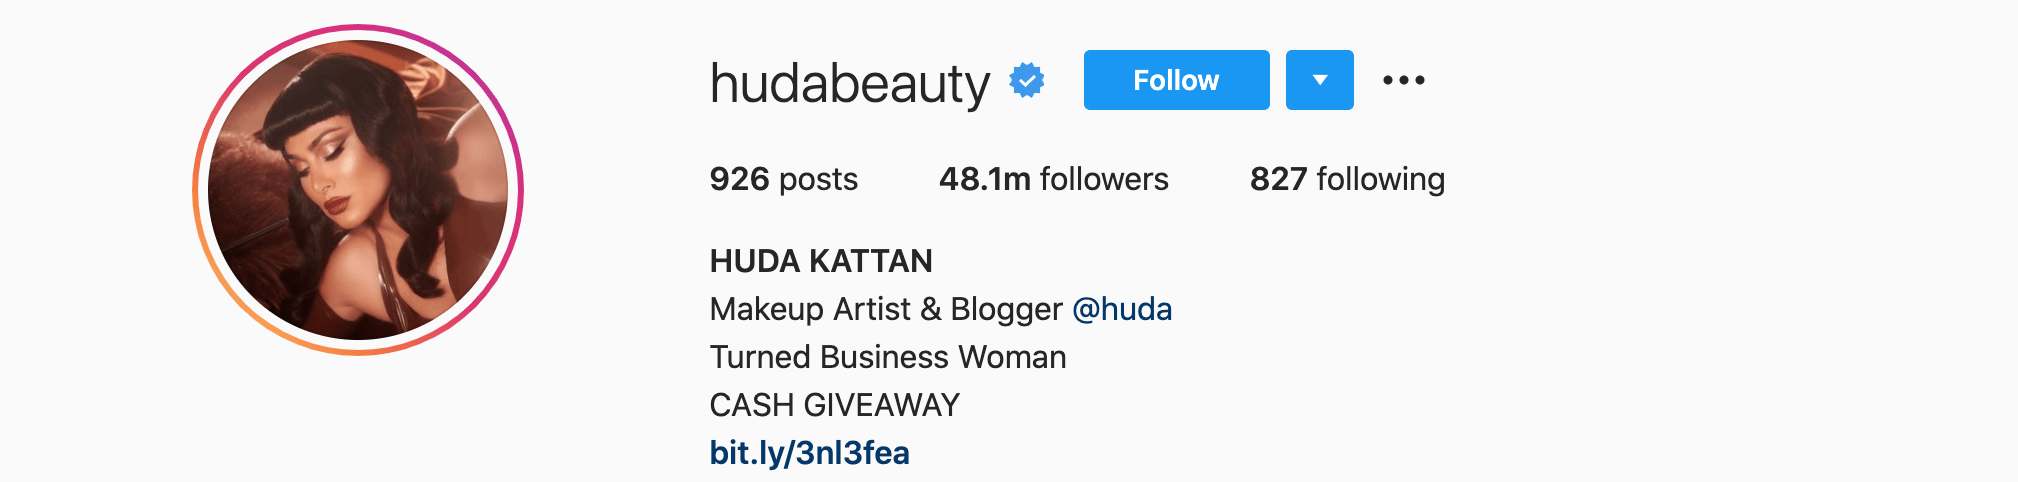 Top Instagram Influencers - HUDA KATTAN